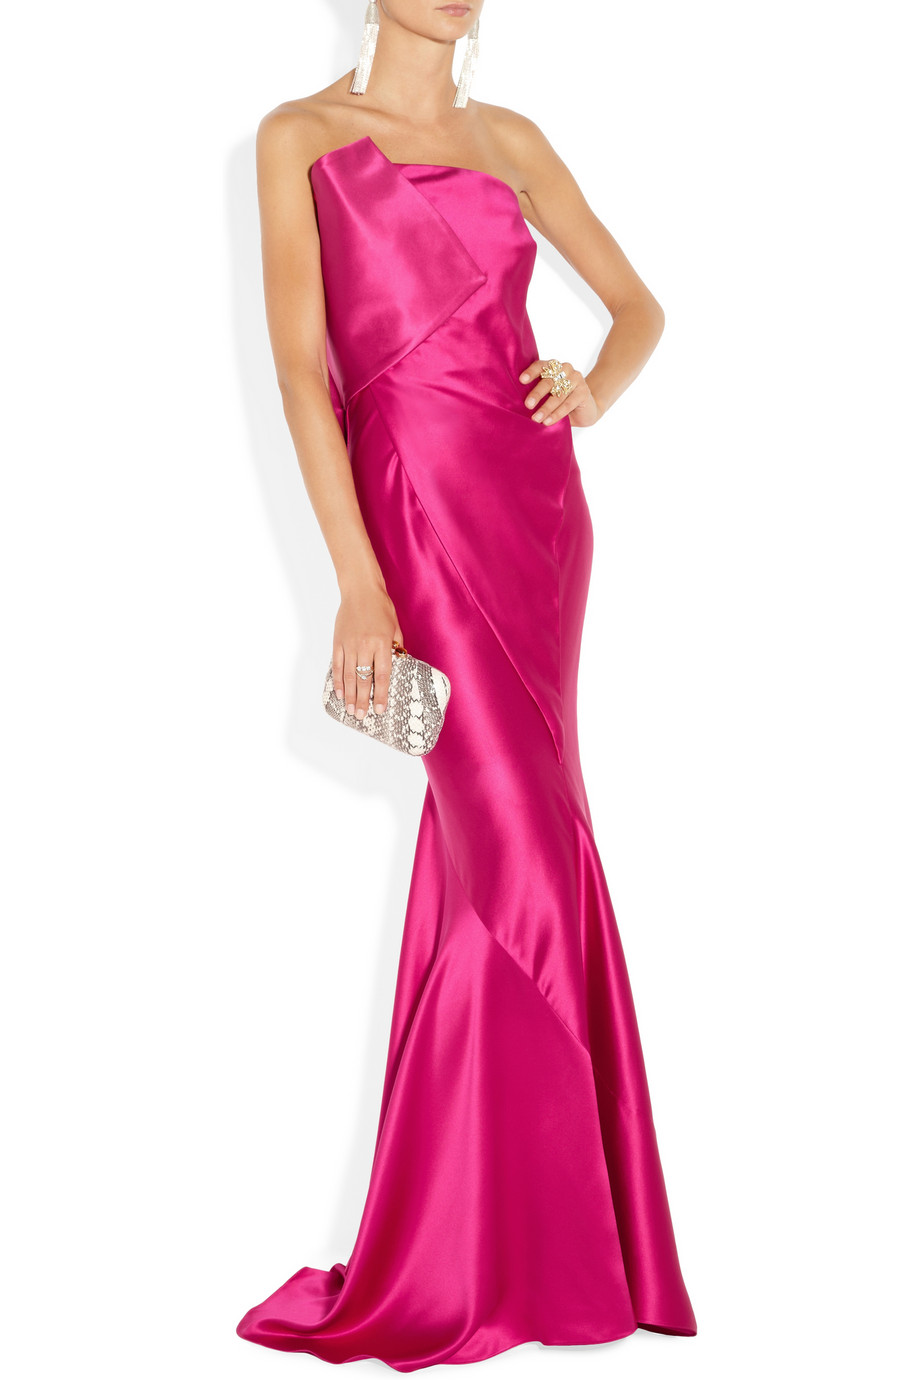 DONNA KARAN NEW YORK Pink Strapless Duchesssatin Gown